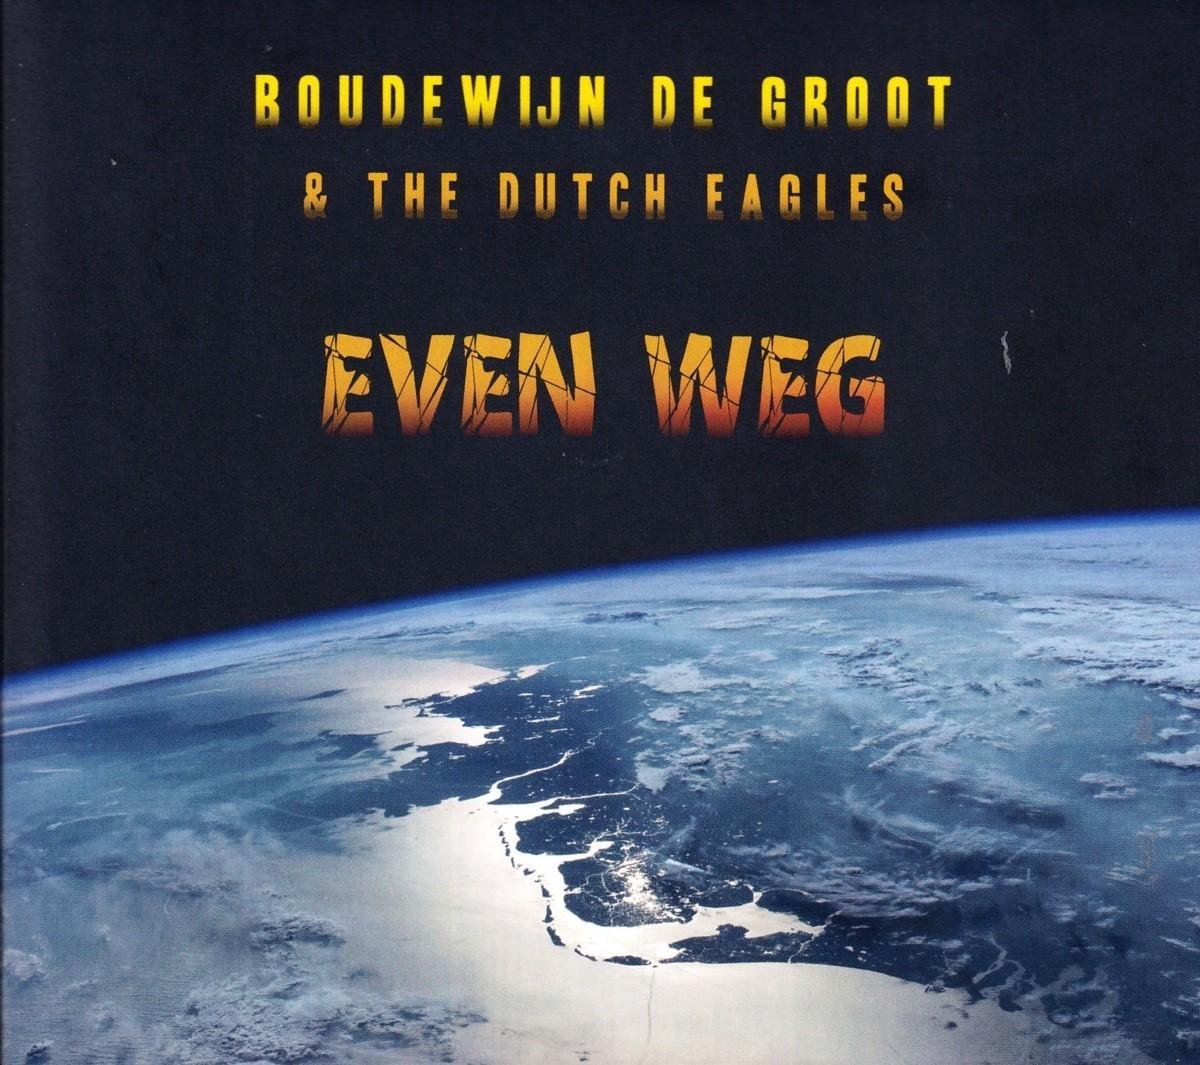 Boudewijn de Groot & The Dutch Eagles - Even Weg (CD) - Boudewijn de & The Dutch Eagles Groot